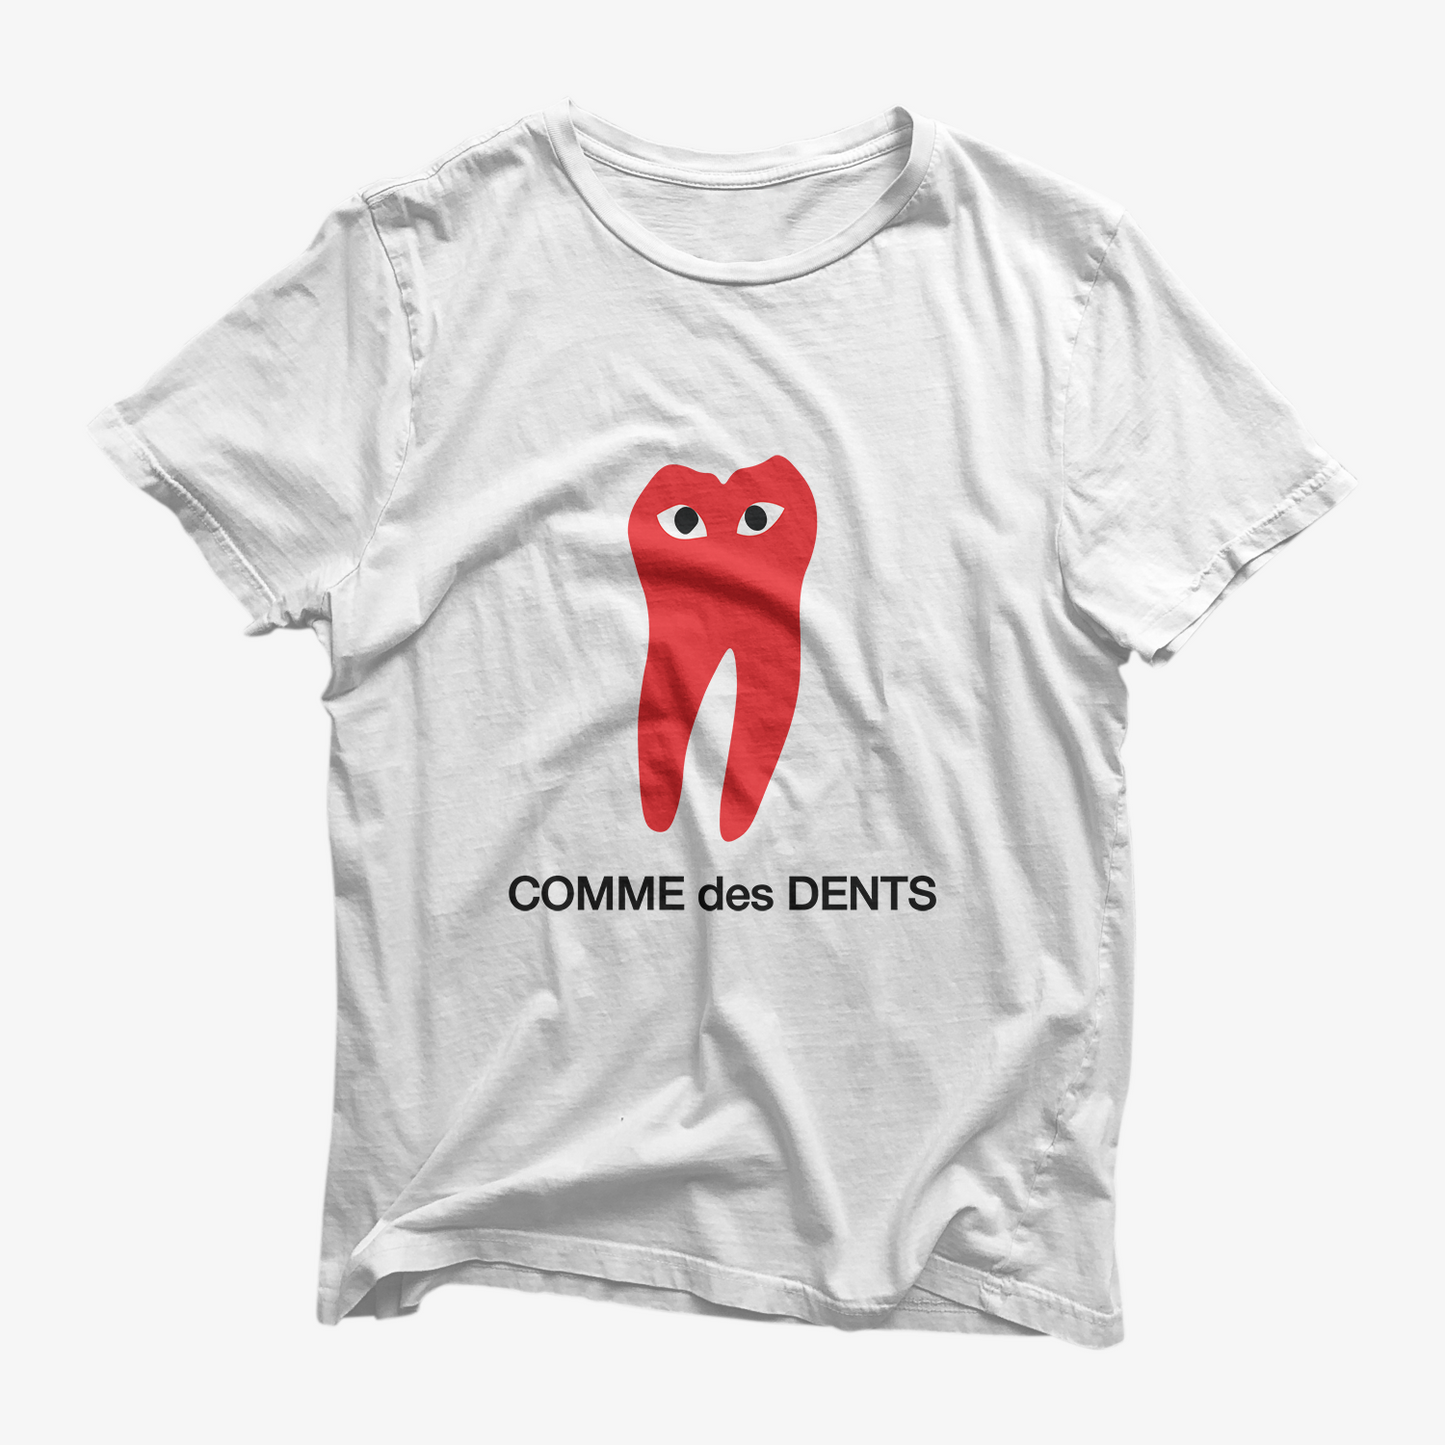 Comme des Dents Shirt